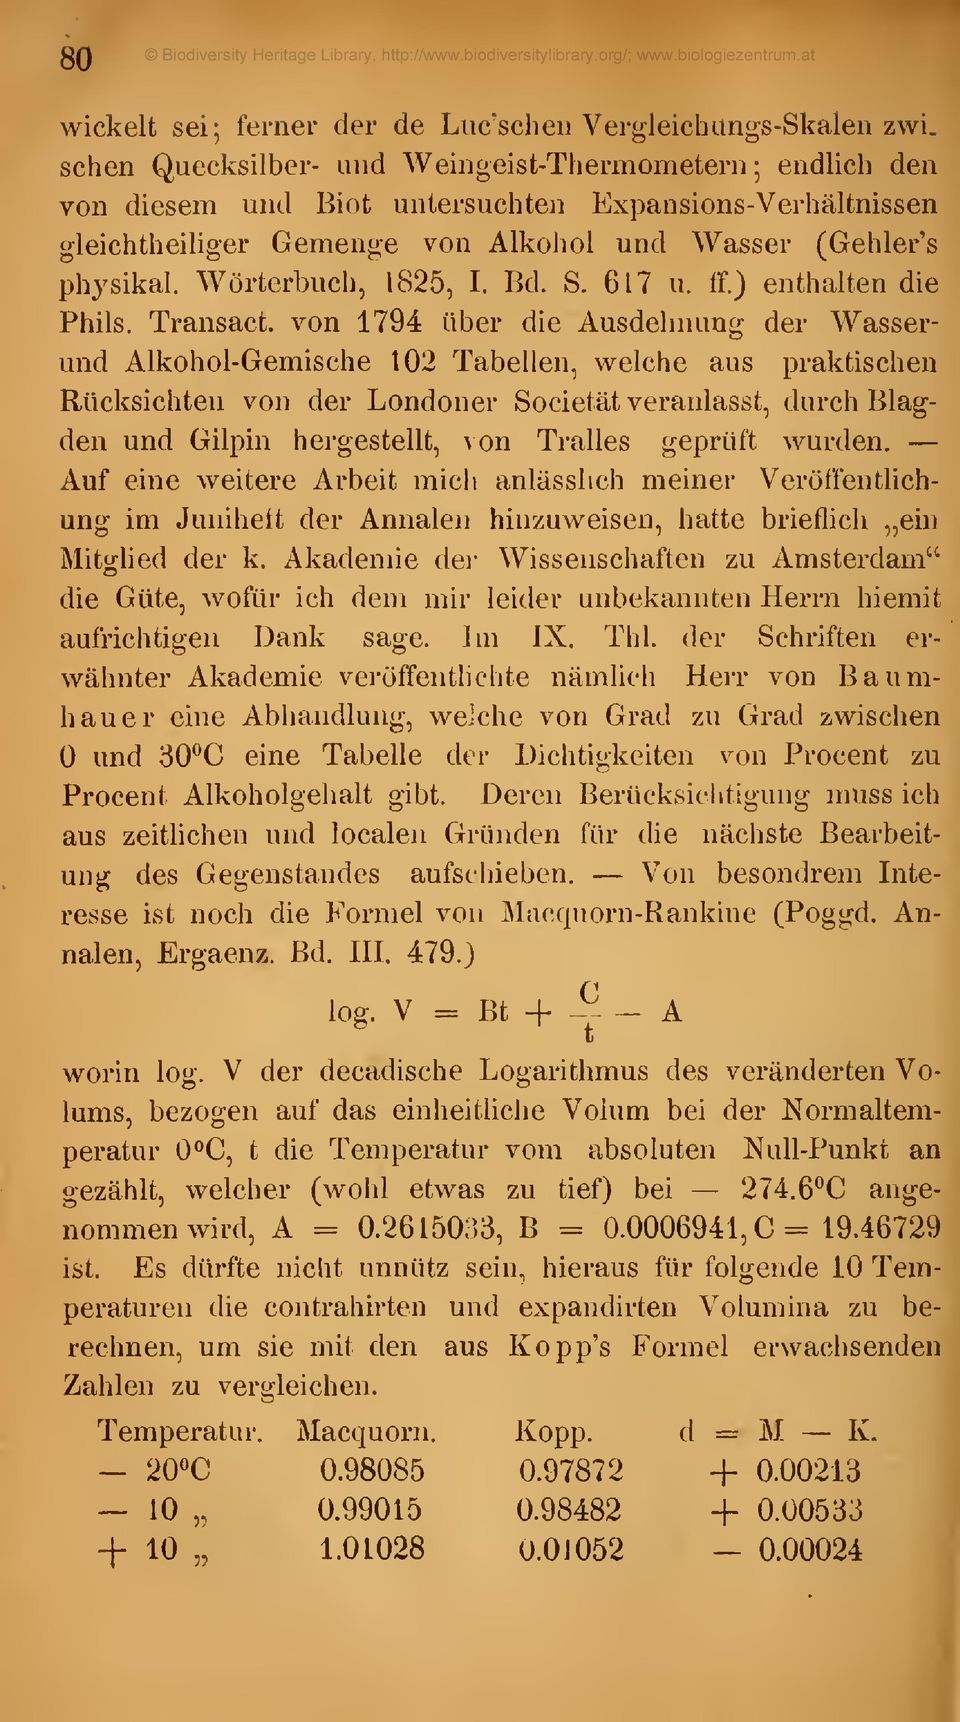 Wörterbuch, 1825, I. Bd. S. 617 u. ff.) enthalten die Phils. Transact.